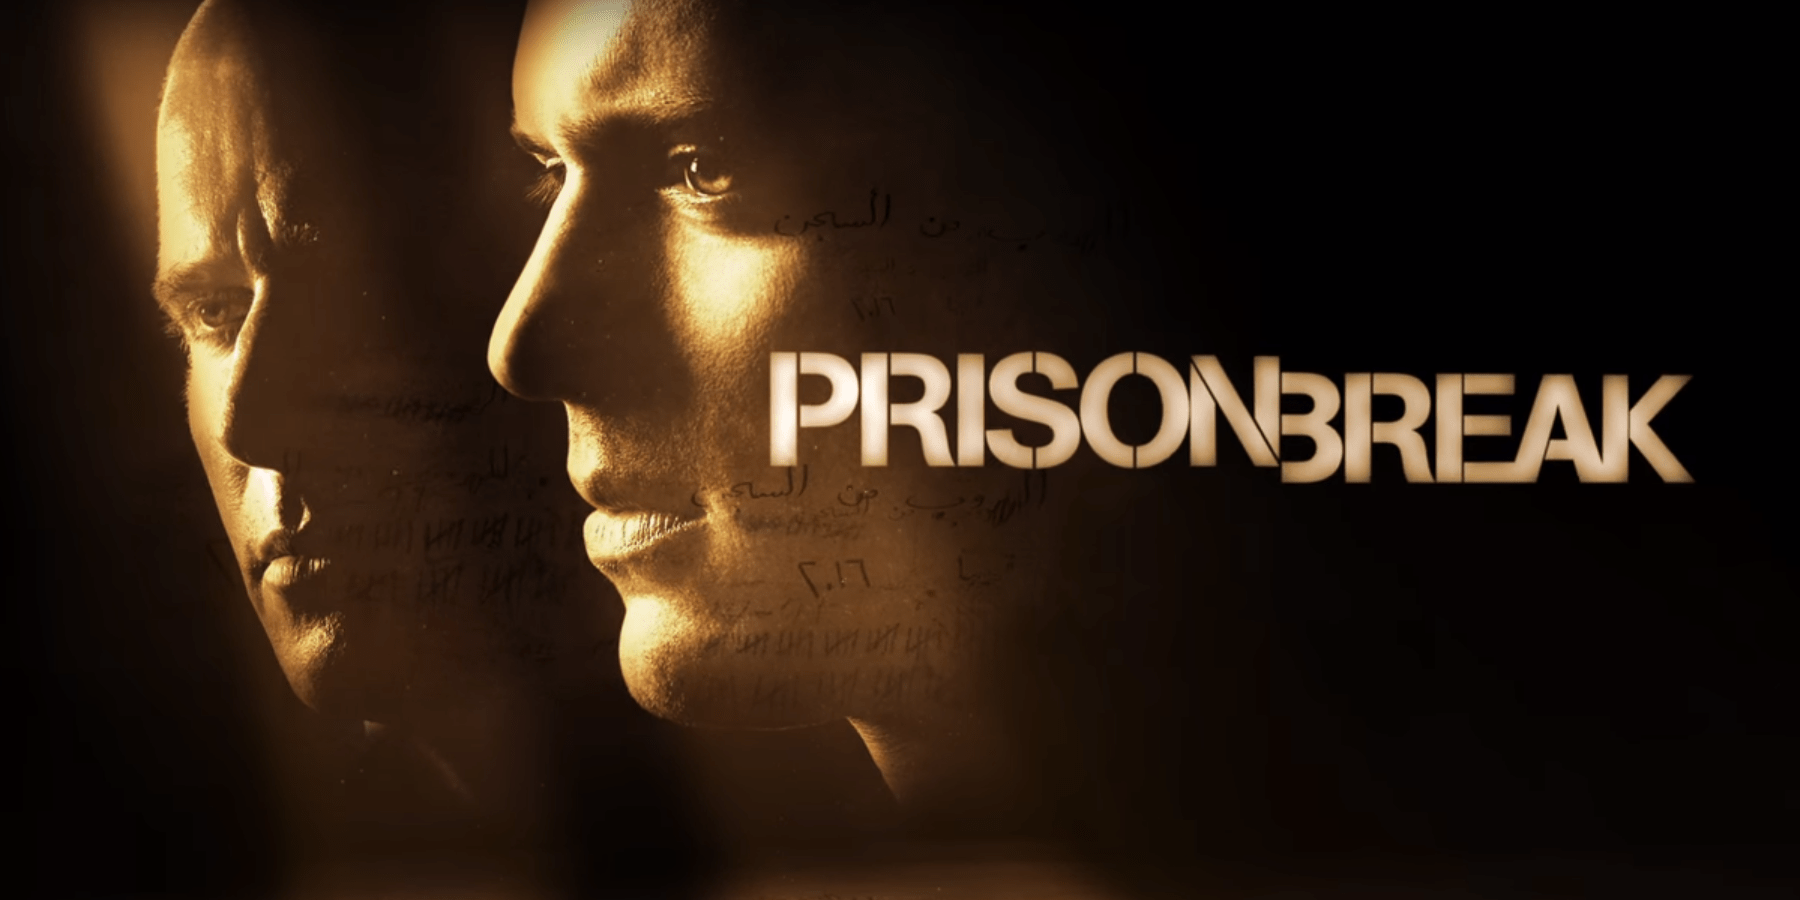 Prison Break Season 5 sees Michael back from the dead